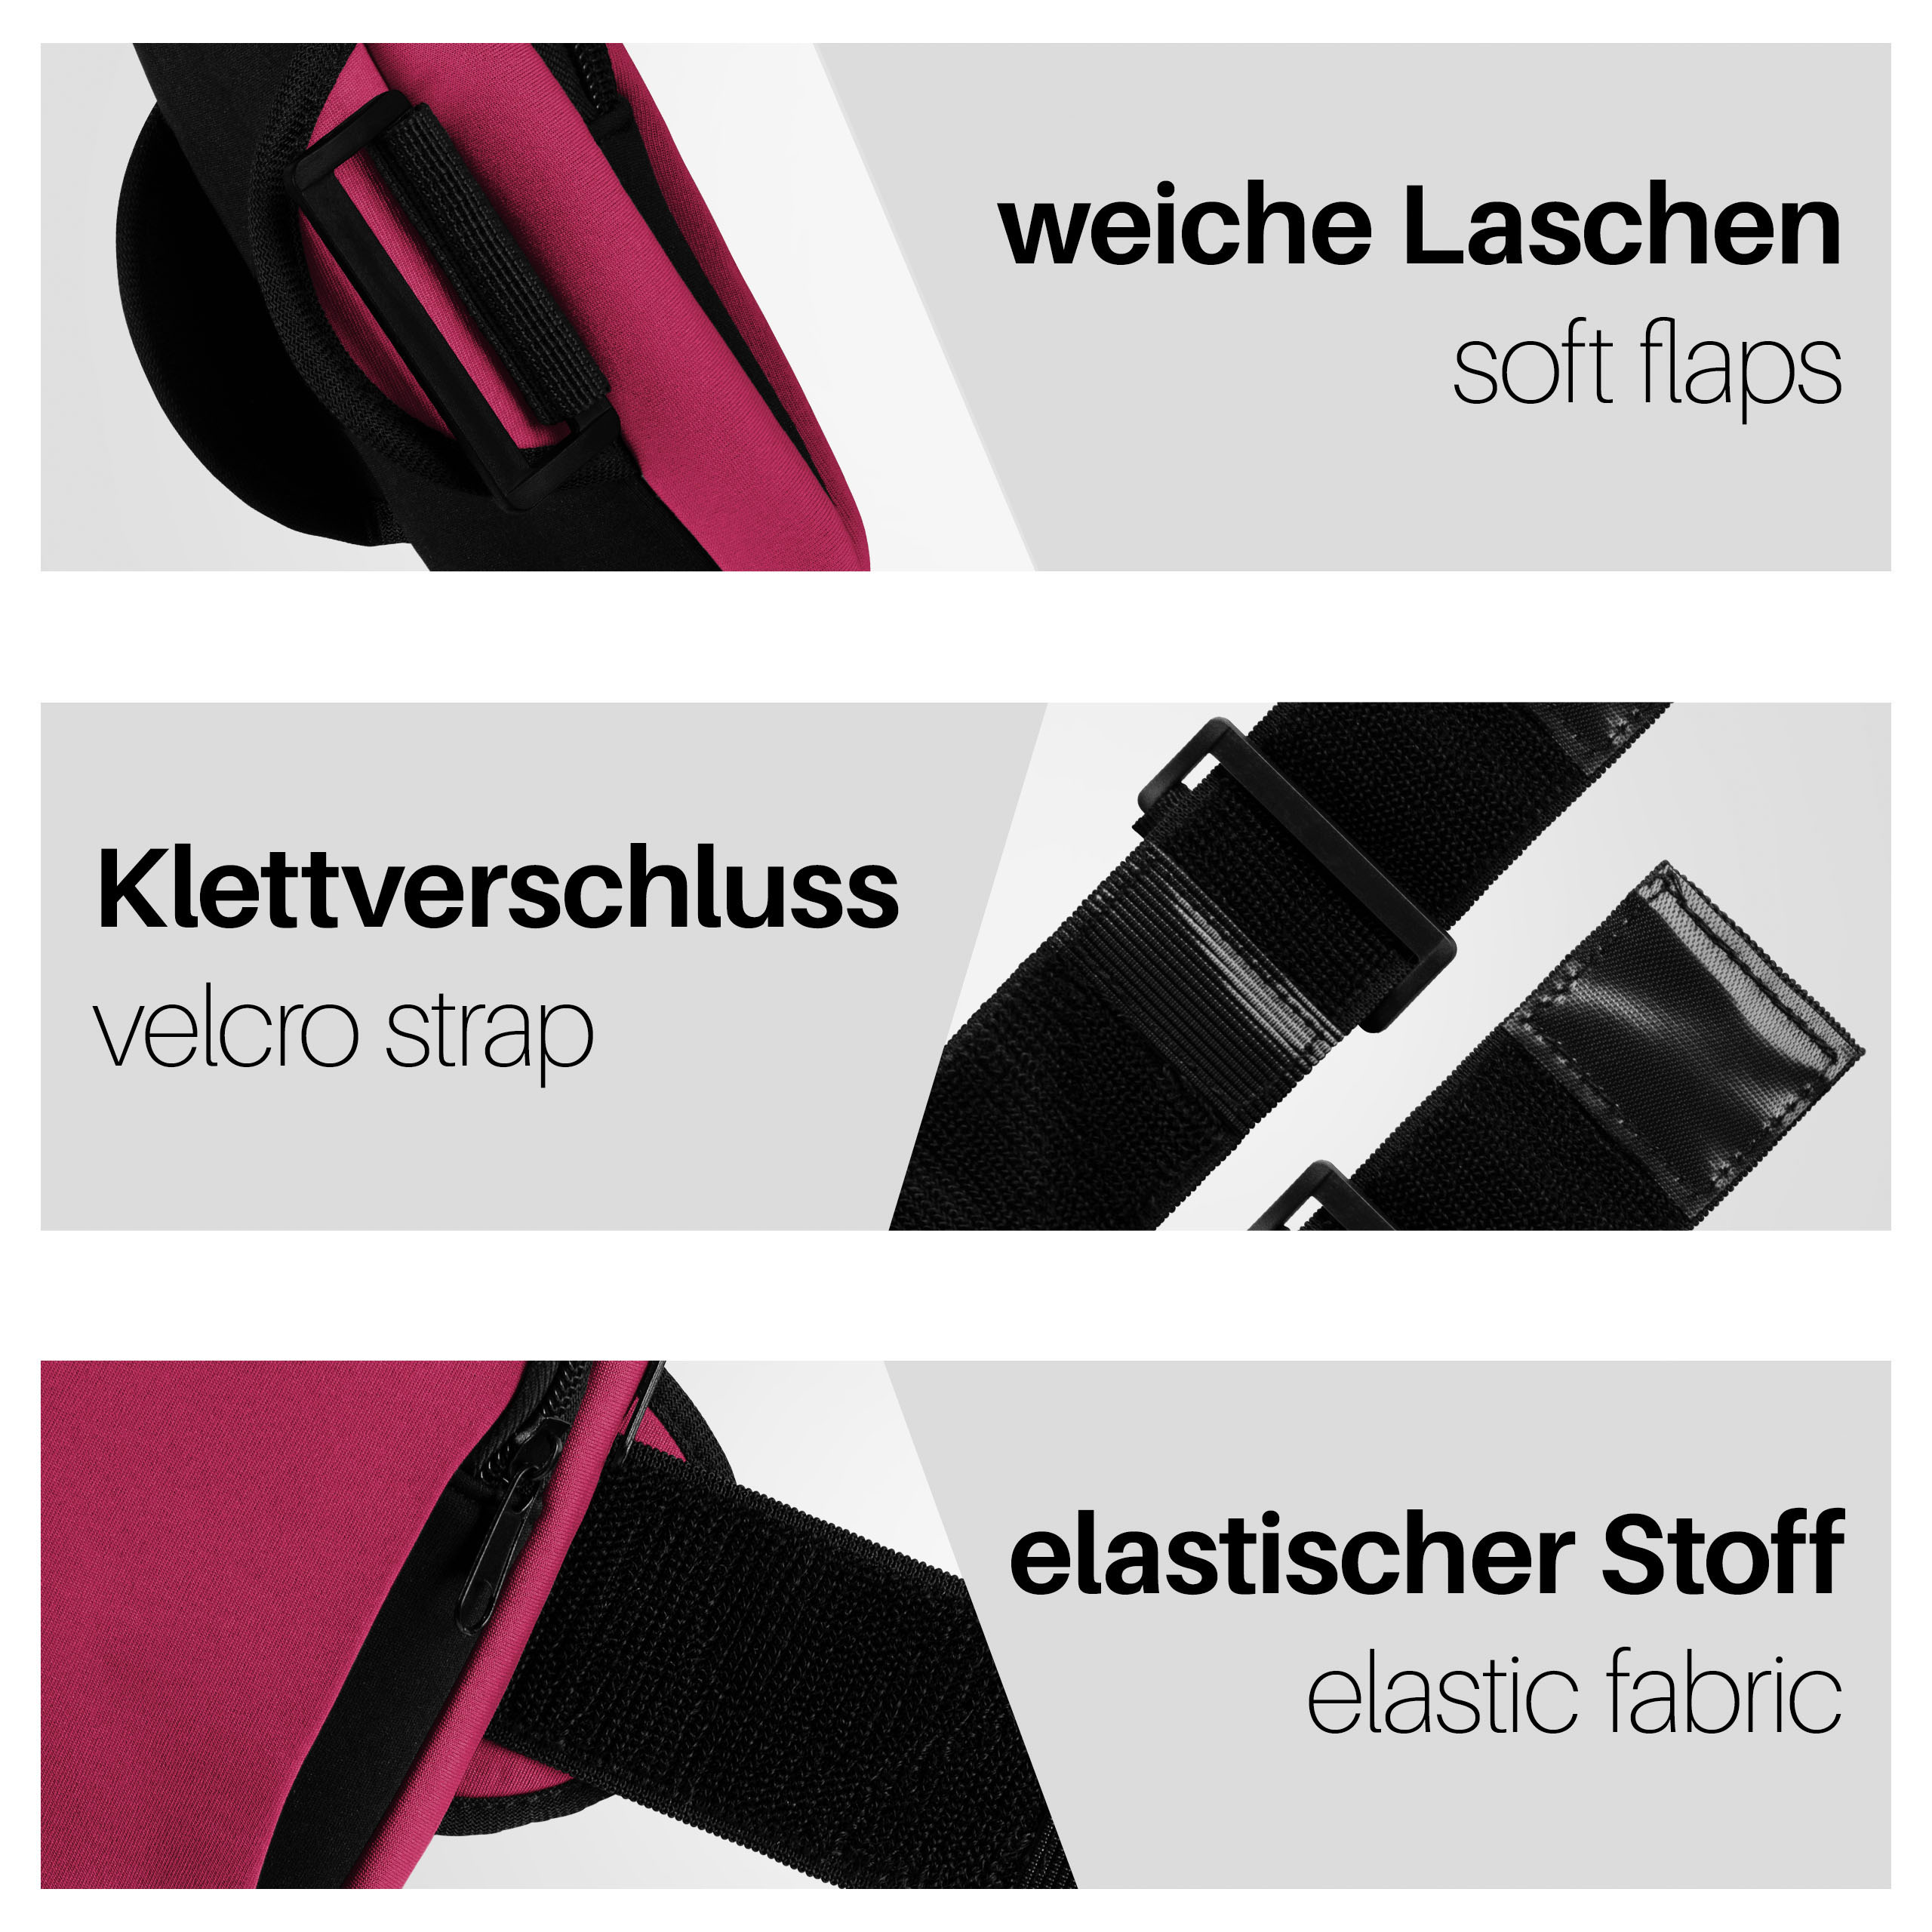 Armband, MOEX Pink Sport Q60, Full Cover, LG,